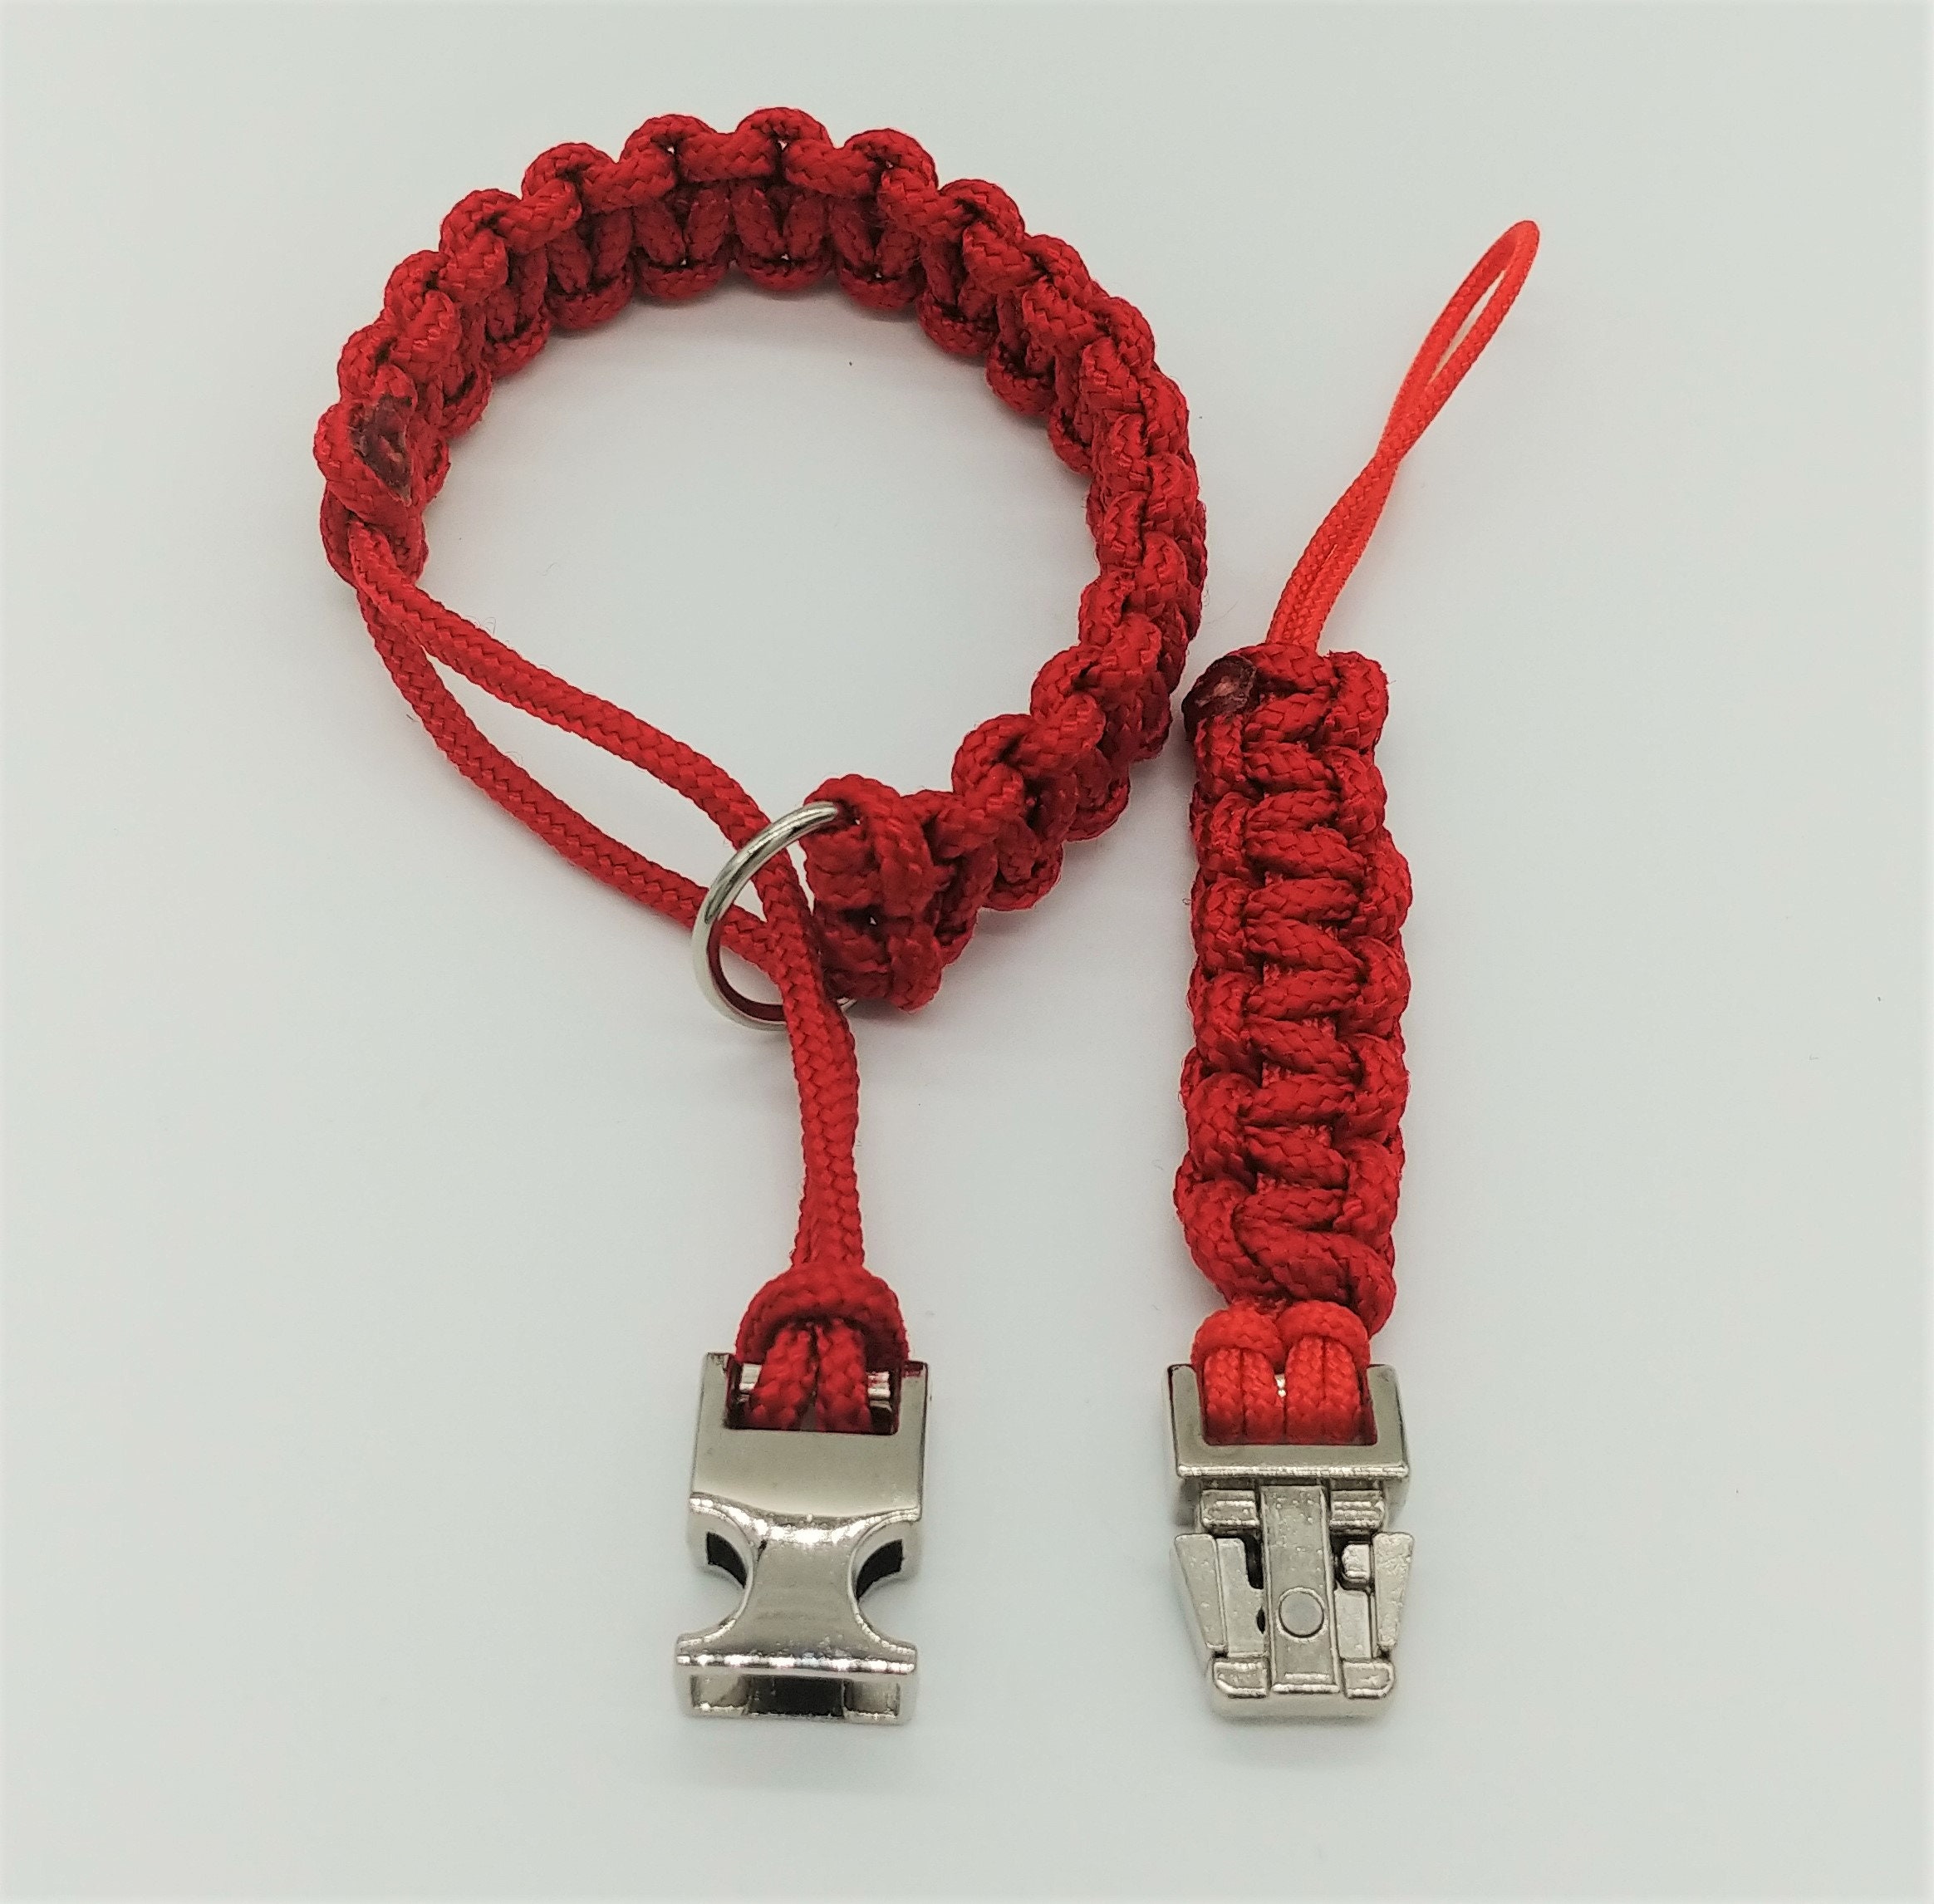 Kamera-Handschlaufe / Kameragurt / Kameraschlaufe geknotet aus Parachute Cord (Fallschirmschnur) mit Klick-Schnellverschluß / Farbe Rot